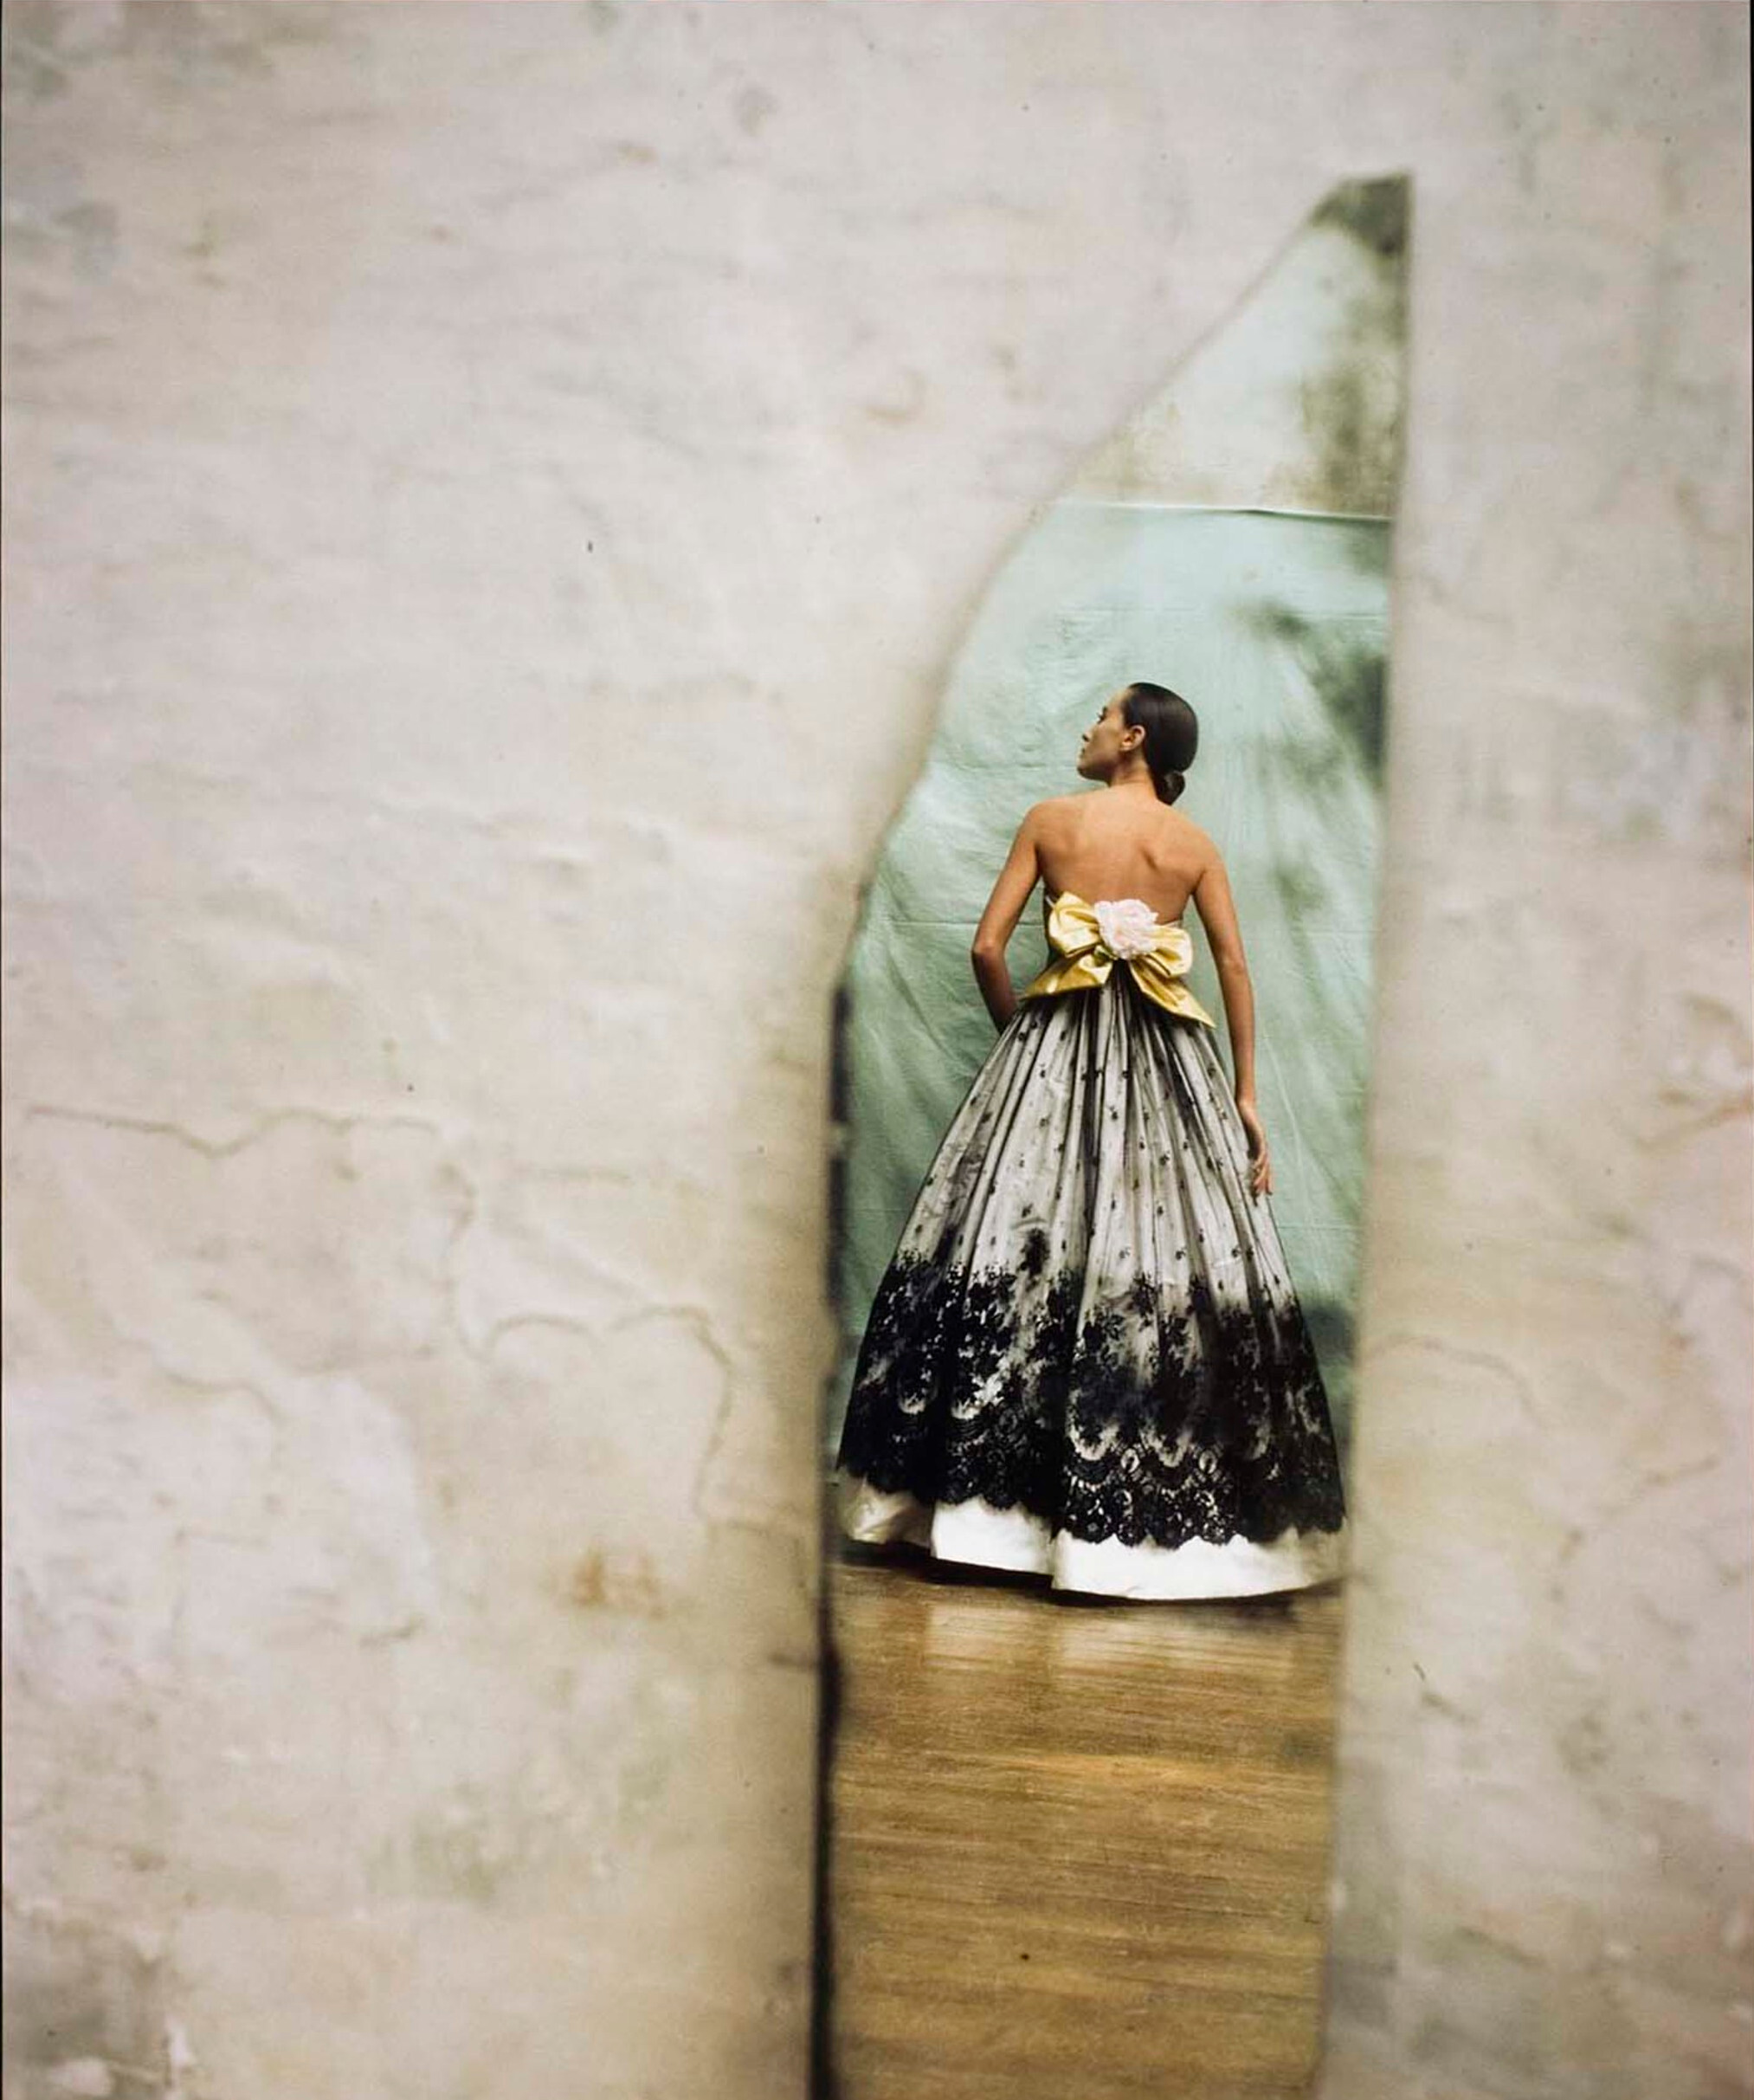 Синтия Антонио, Пату, 1987 г. Фотограф Дэвид Сайднер